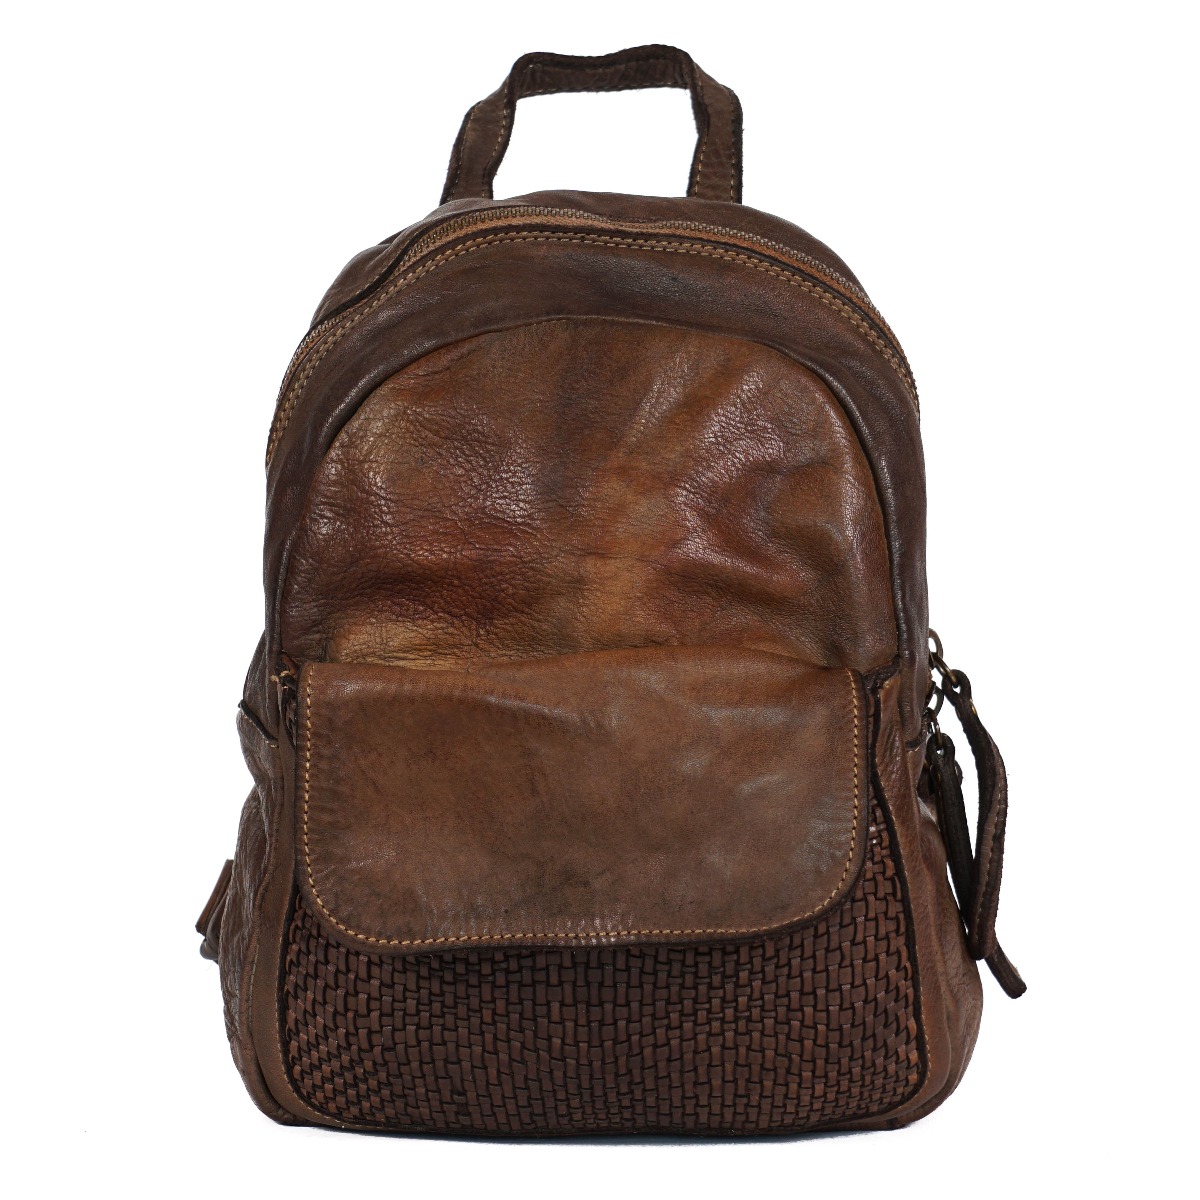 Soft leather denim vintage backpack